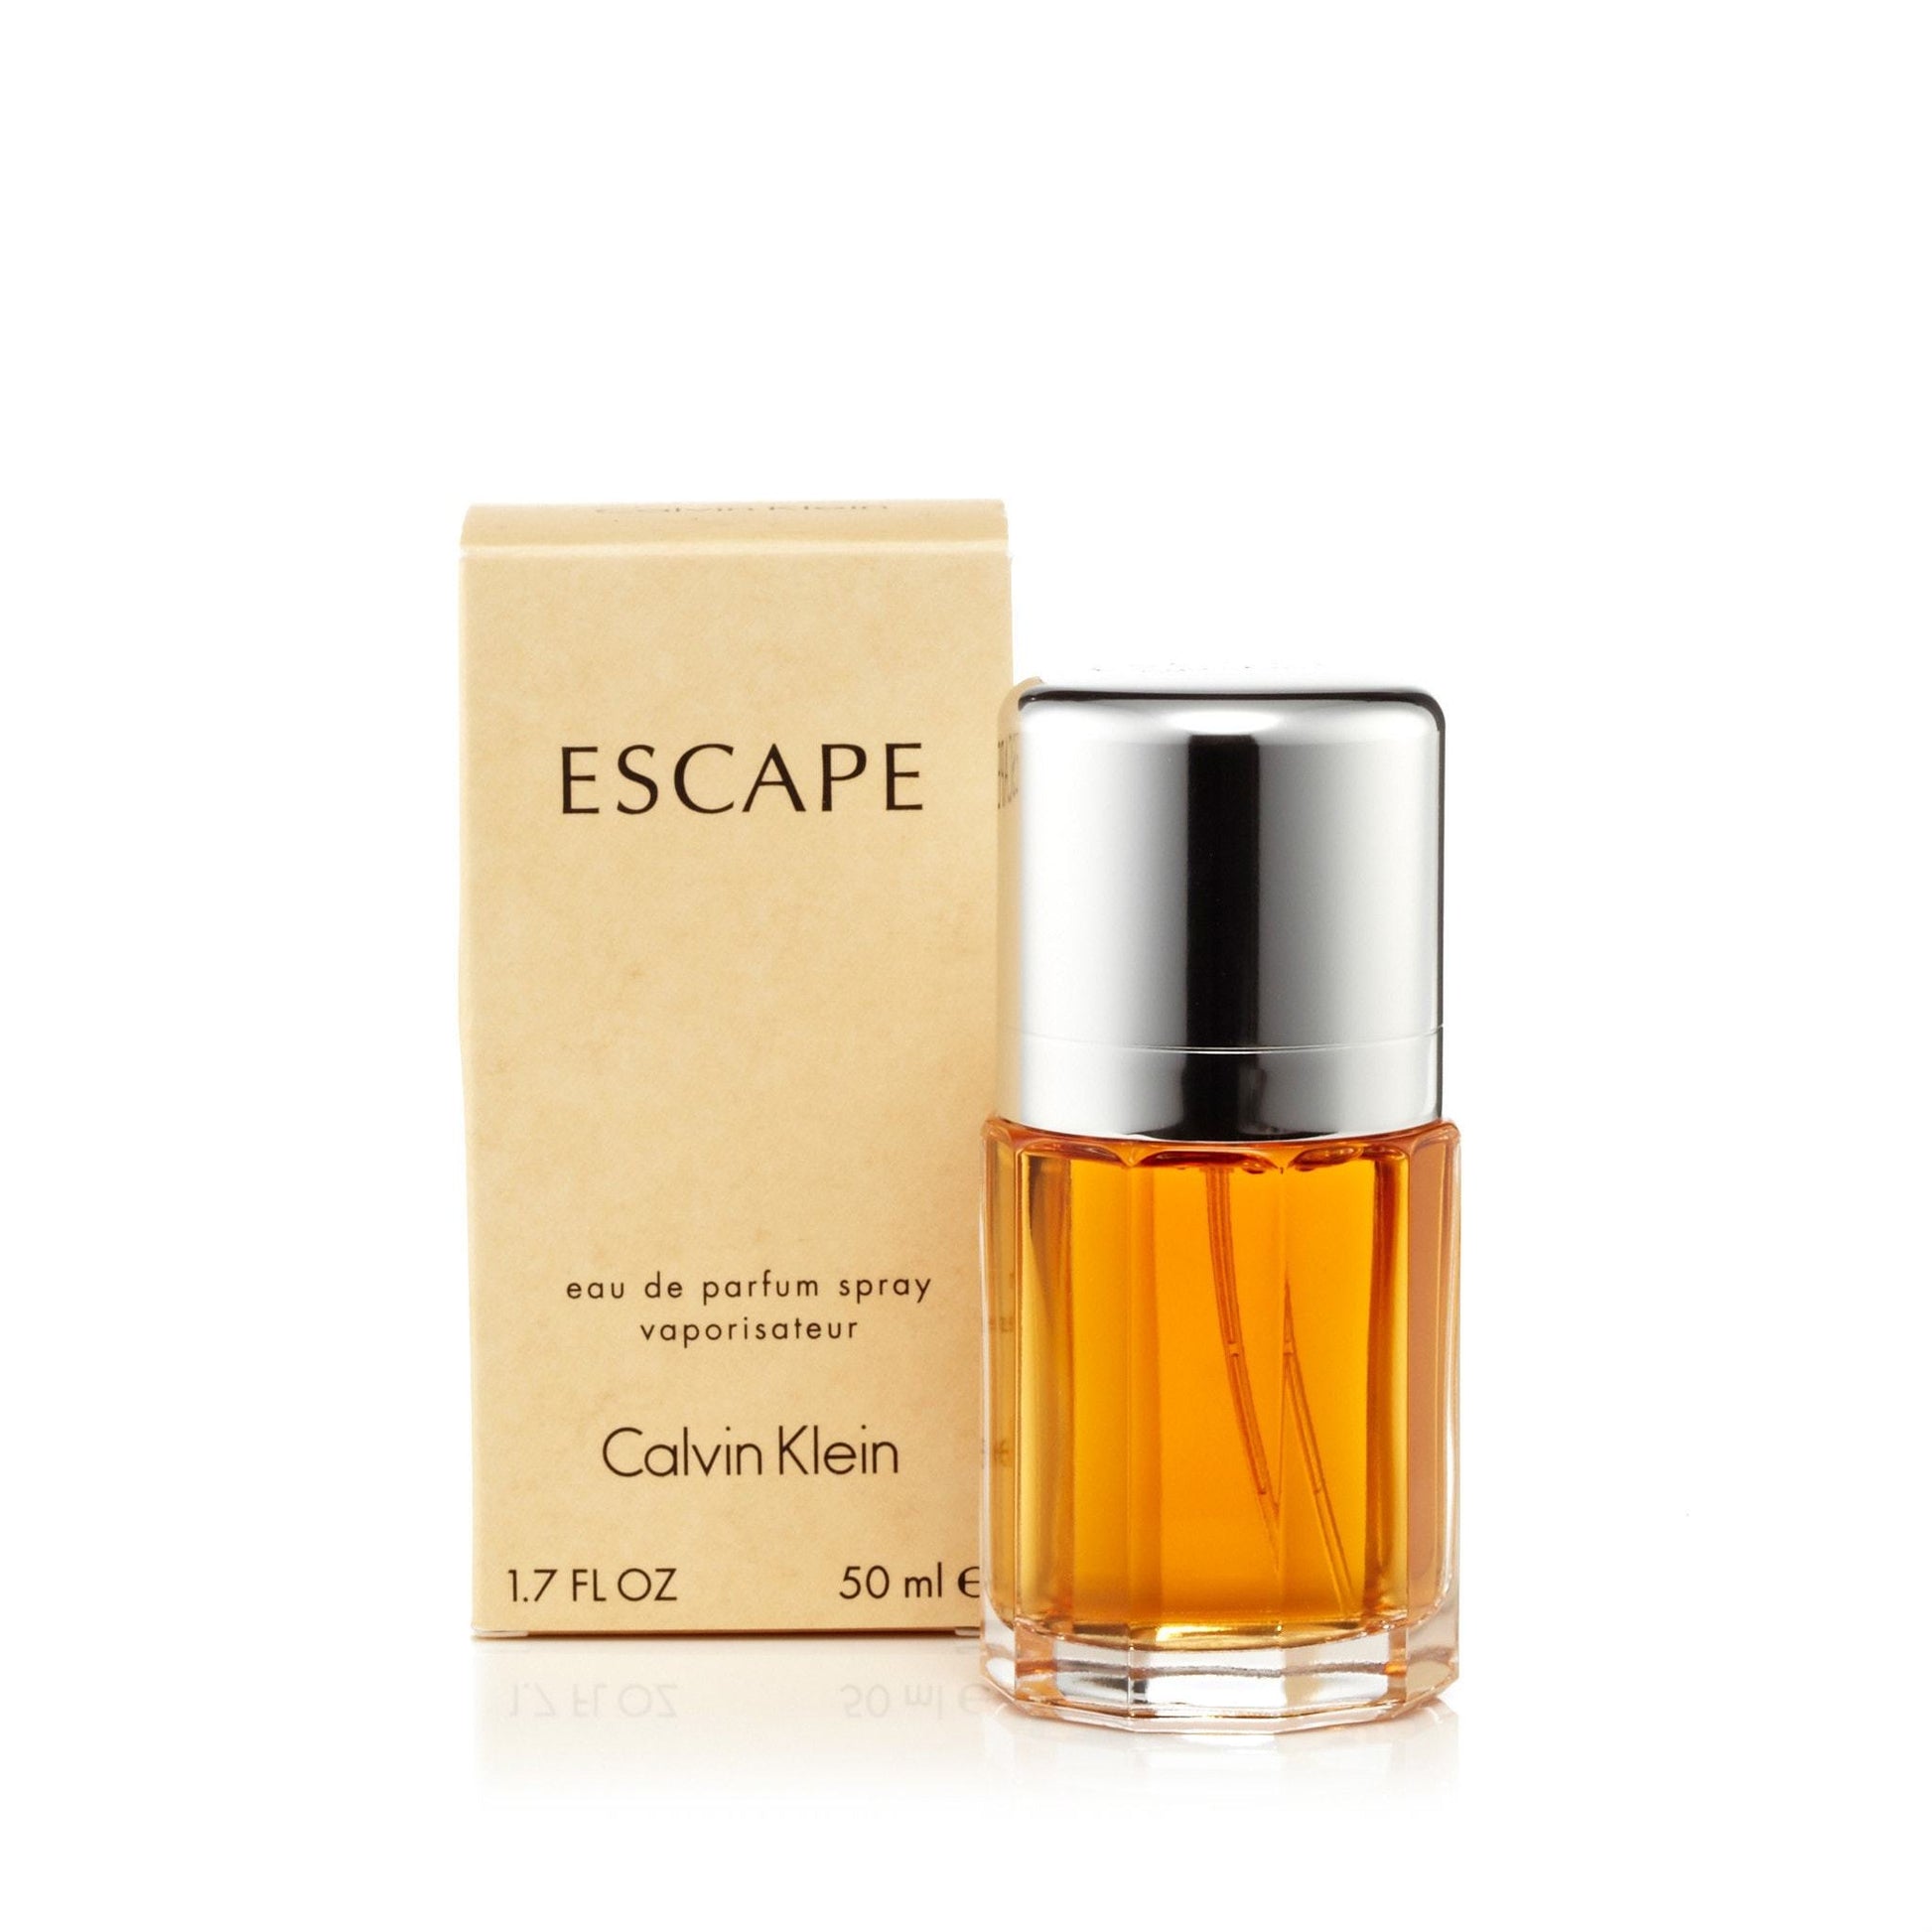 Escape Eau de Parfum Spray for Women by Calvin Klein, Product image 3